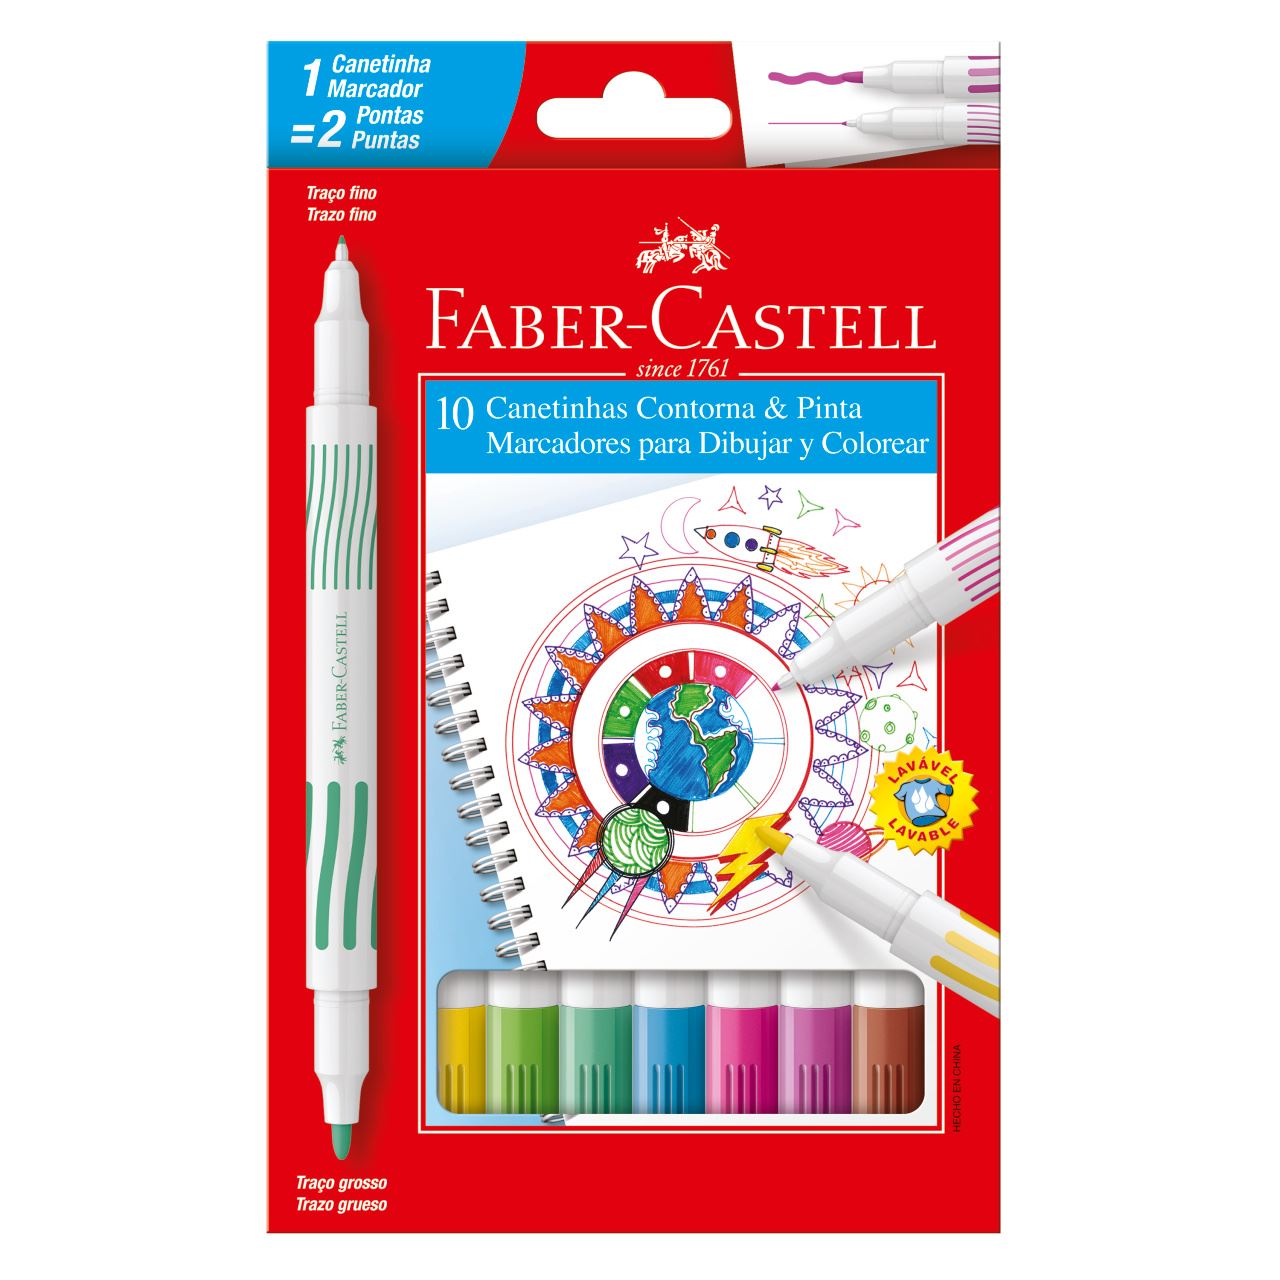 Faber-Castell - Canetinha Hidrografica Contorna & Pinta 10 Cores